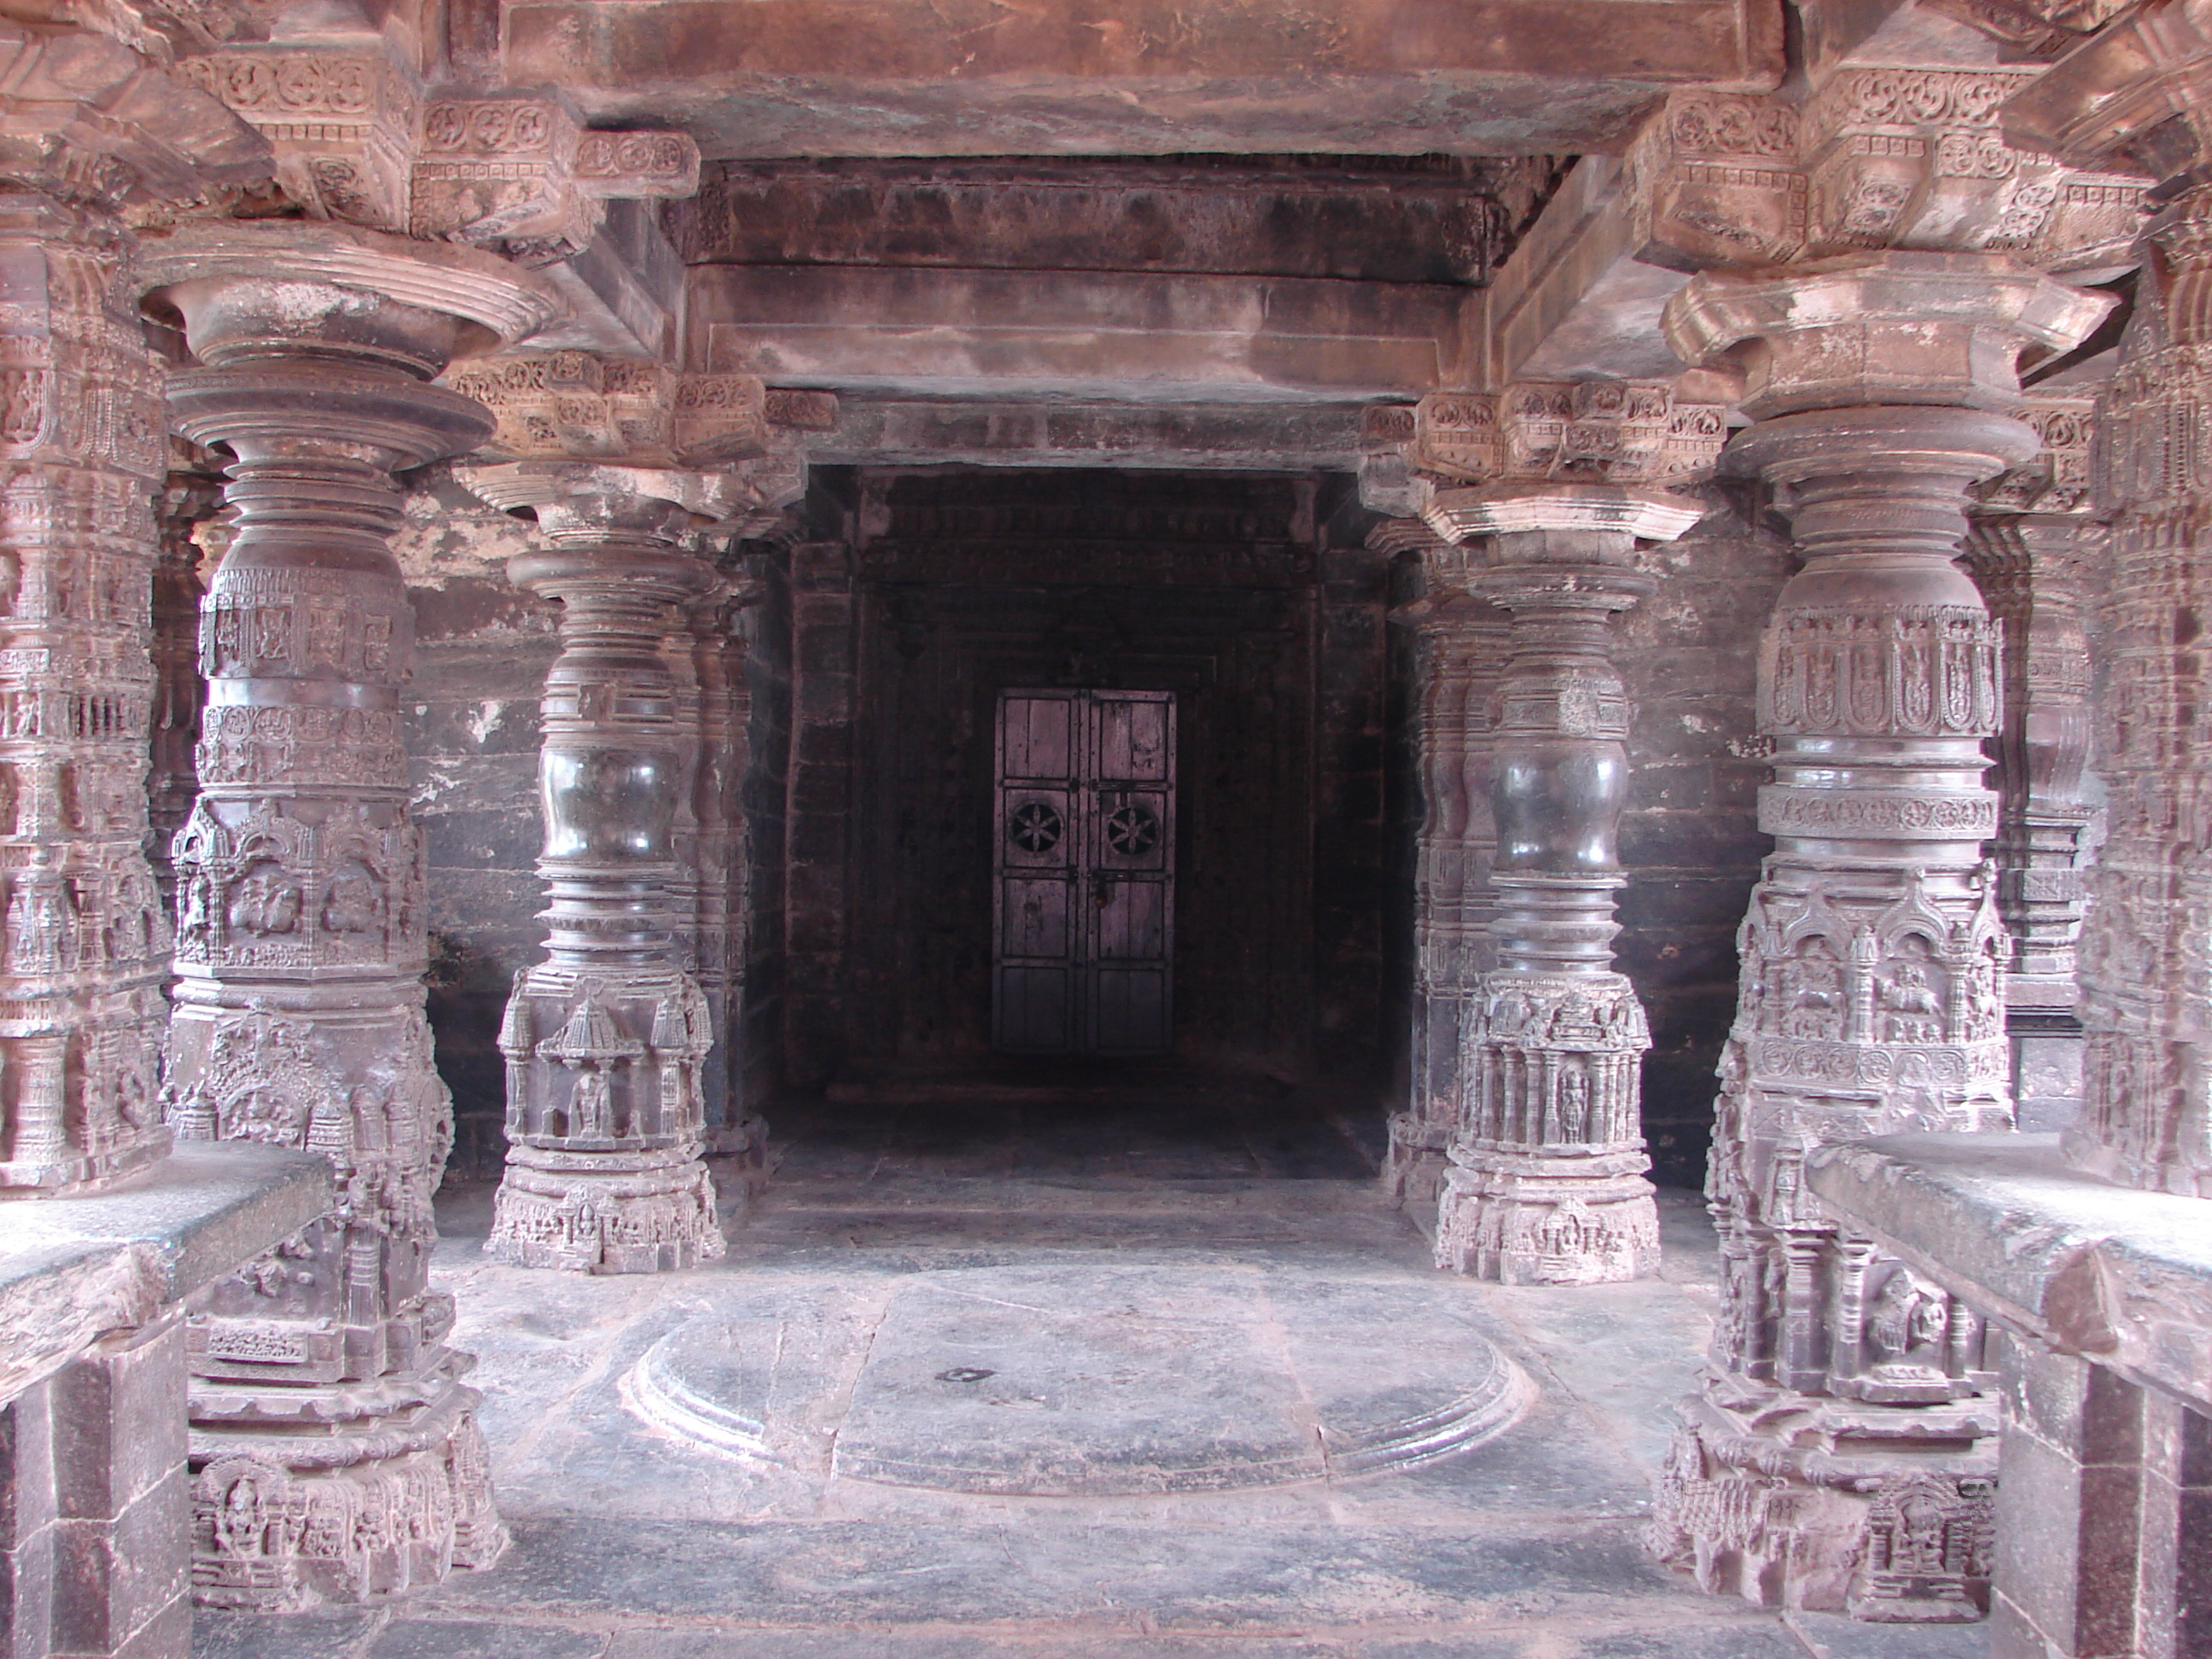 Meghna cave Temple